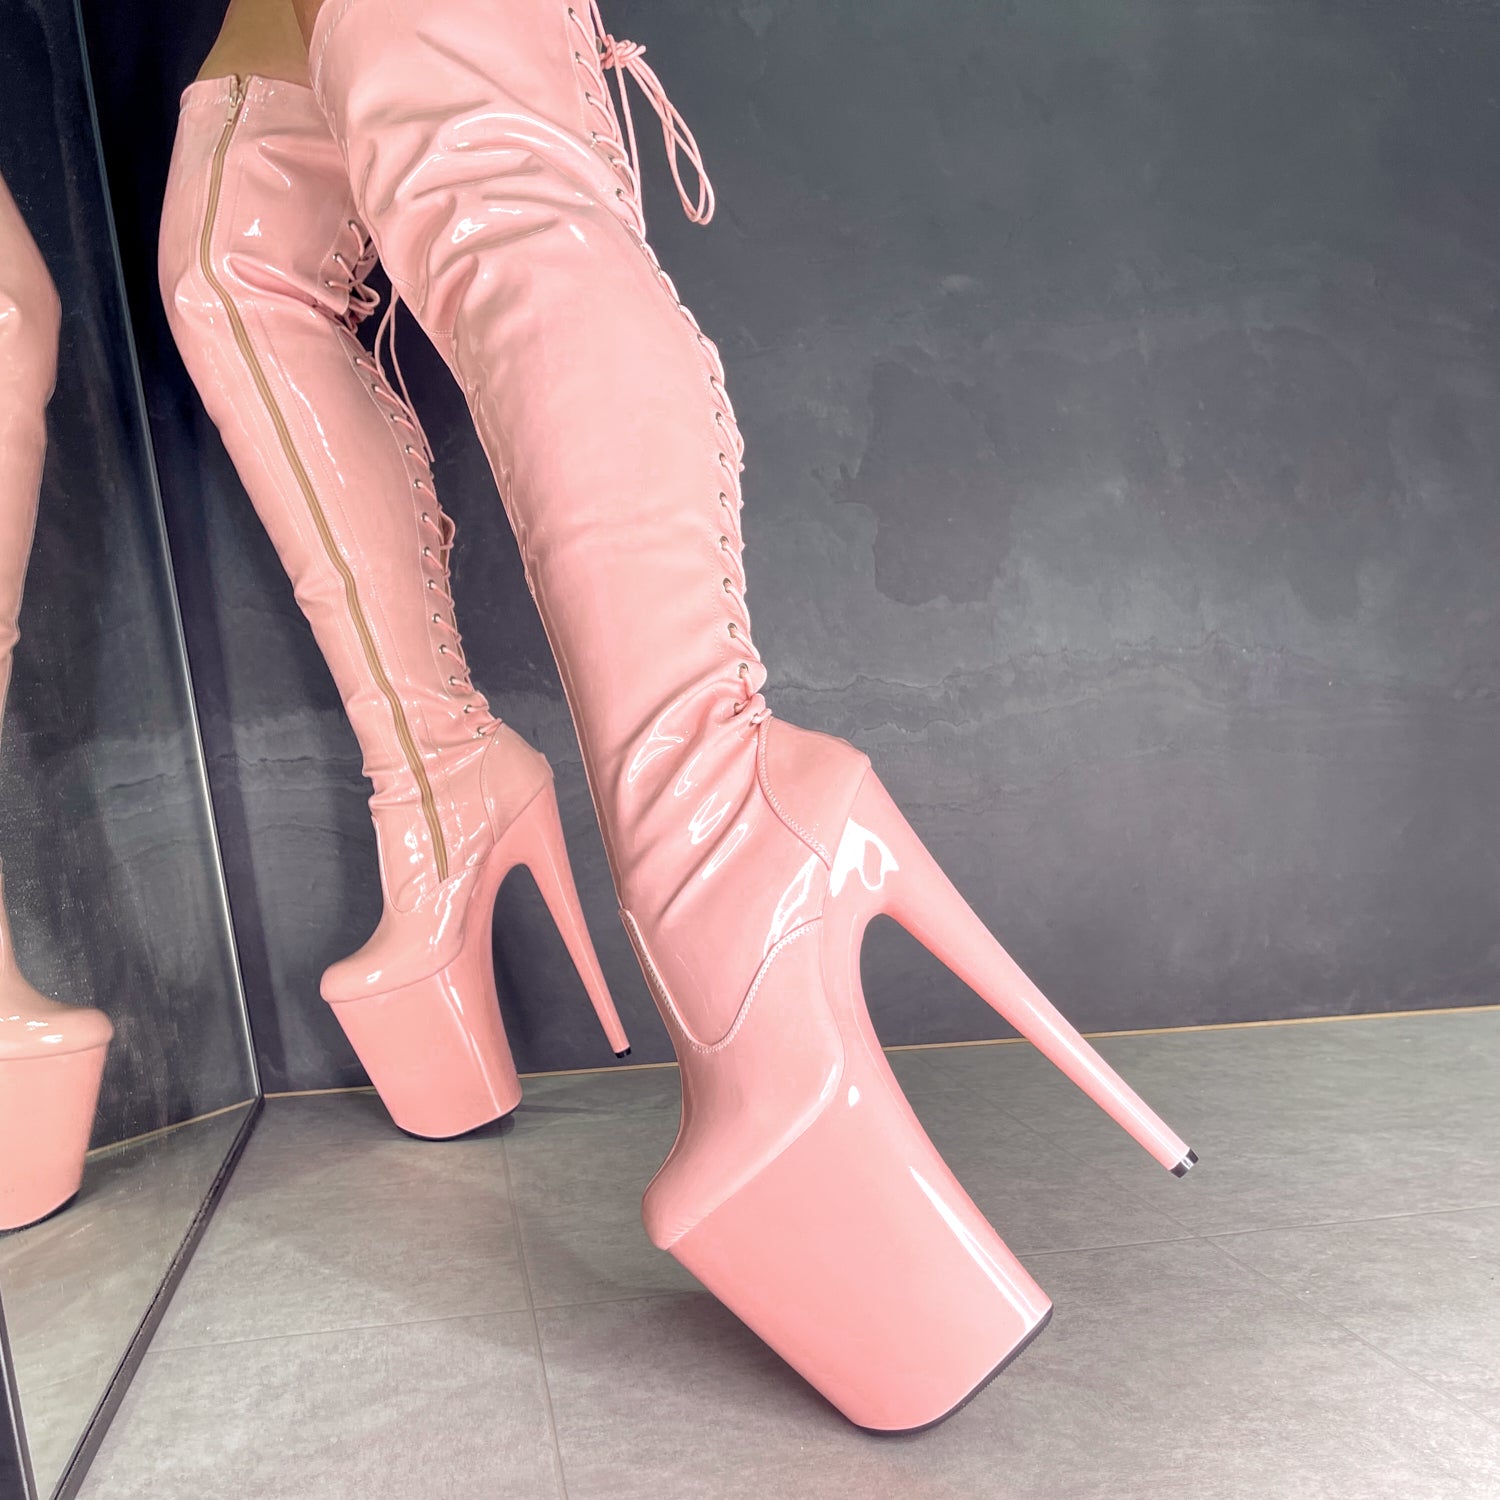 LipKit Thicc Thigh High - Candy Shop - 9 INCH, stripper shoe, stripper heel, pole heel, not a pleaser, platform, dancer, pole dance, floor work